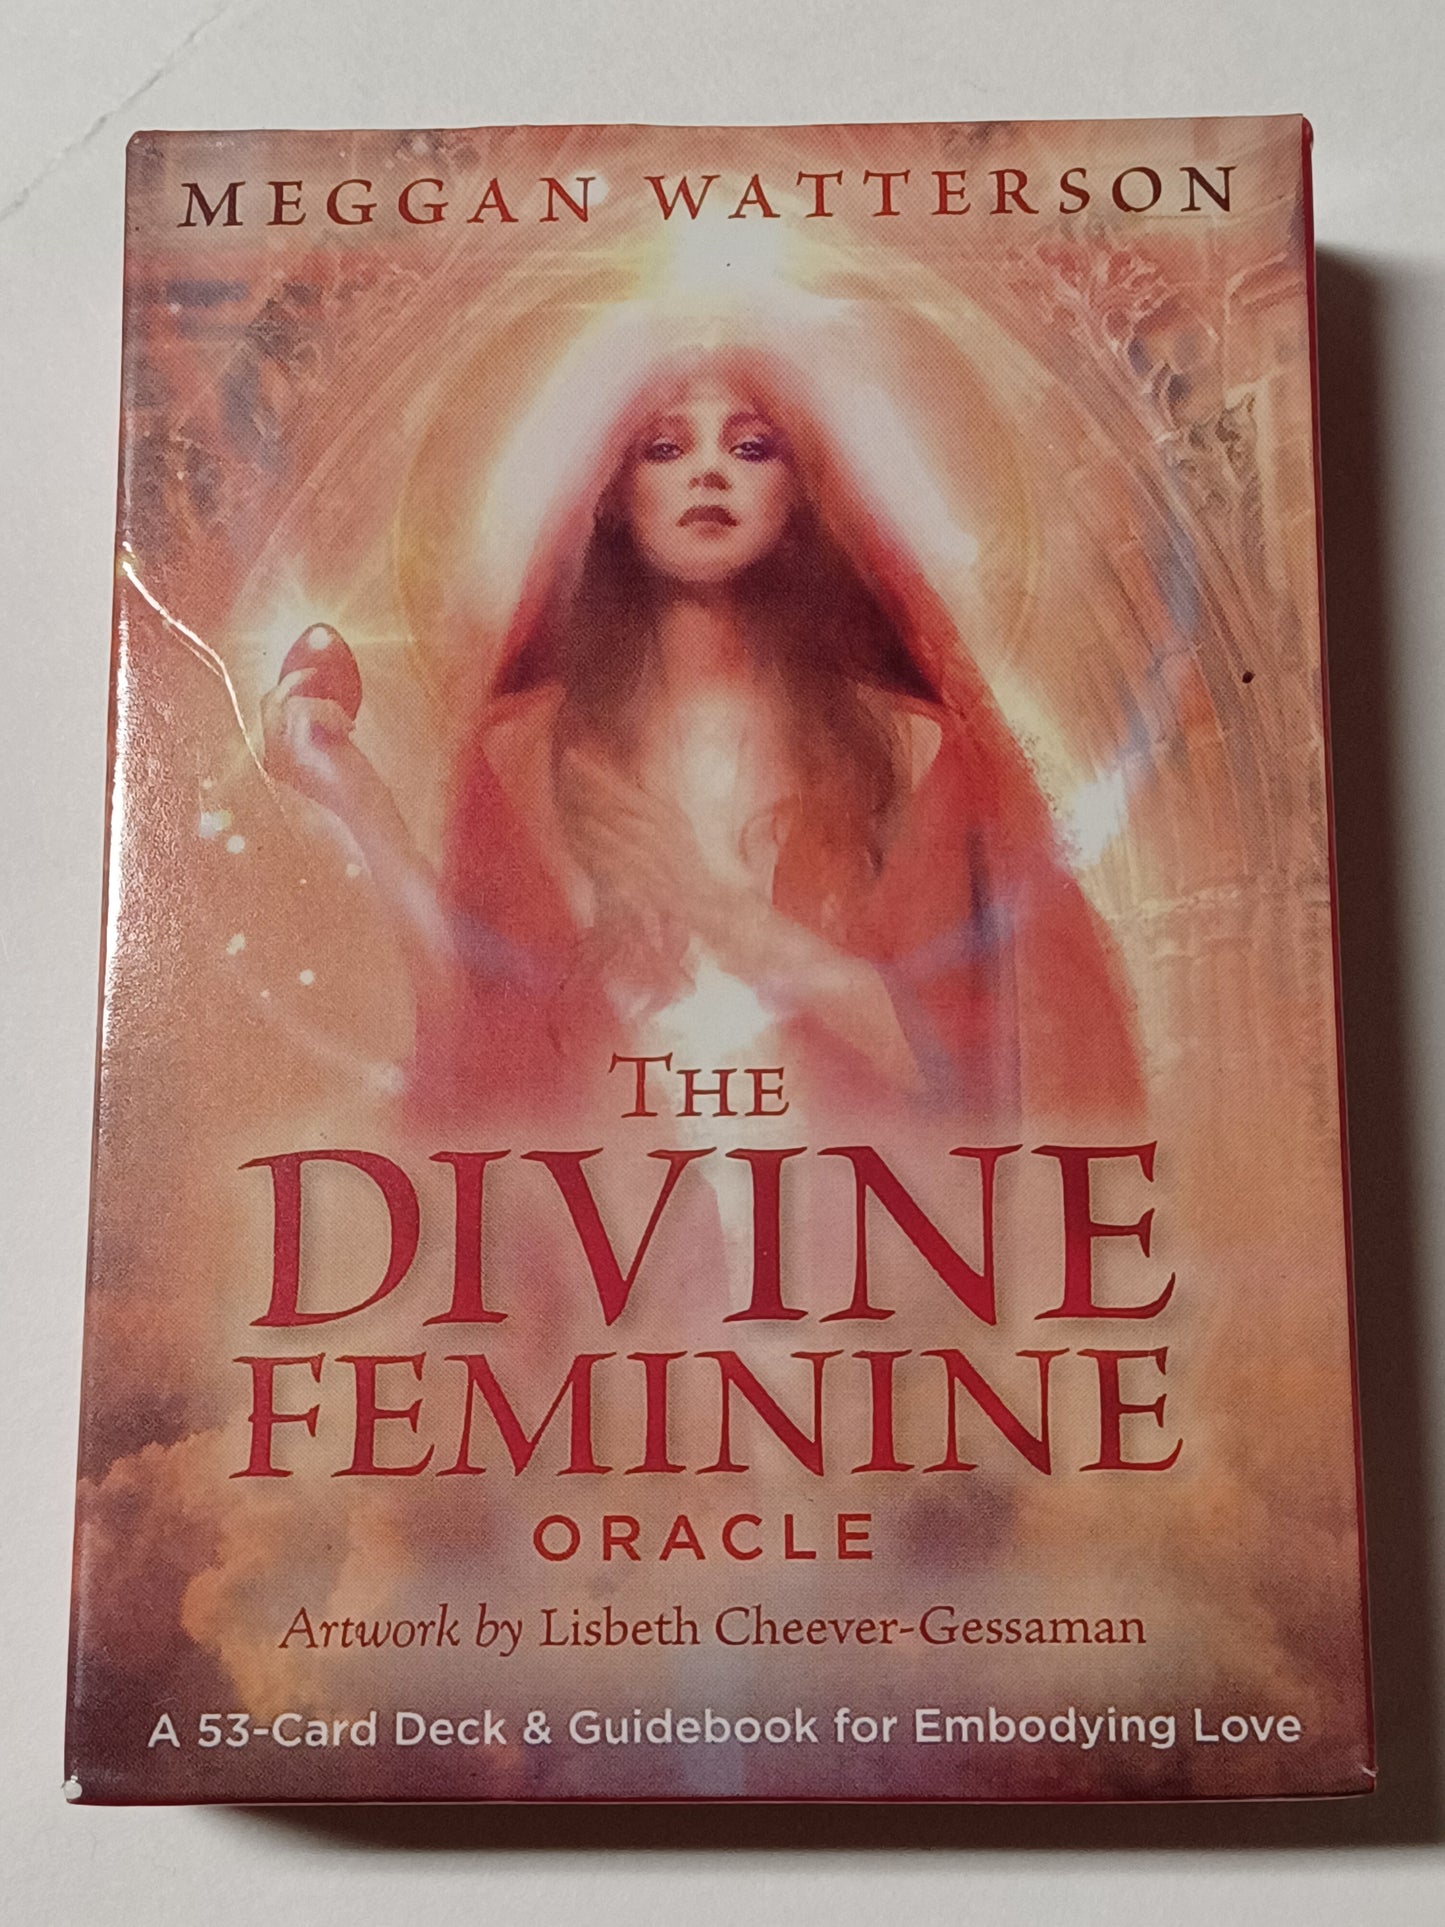 The Divine Feminine Oracle: A 53-Card Deck